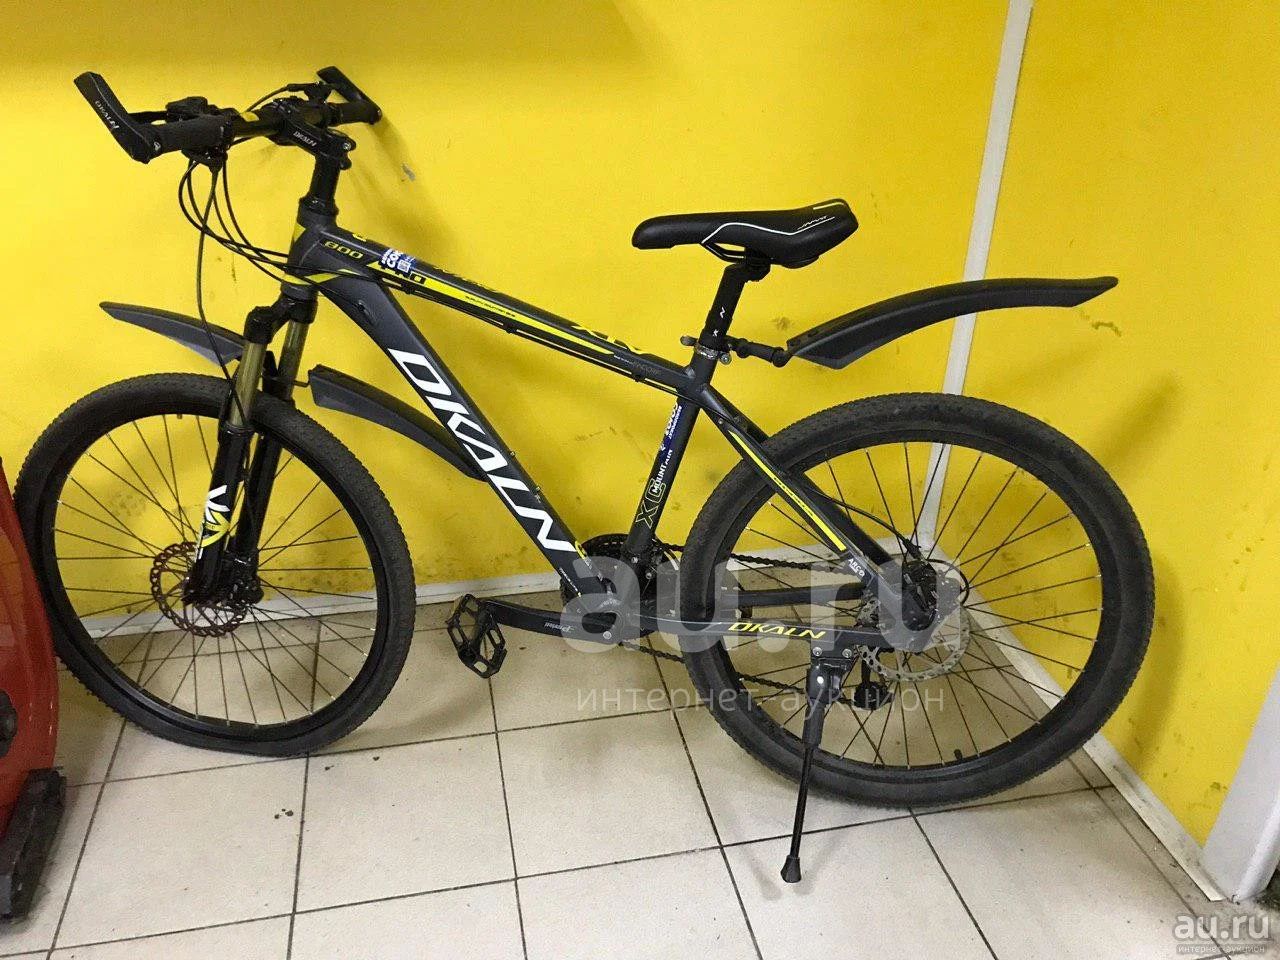 Спортивный велосипед Dkaln PRO 800 (1130) — купить в Красноярске.  Состояние: Б/у. Велосипеды на интернет-аукционе Au.ru